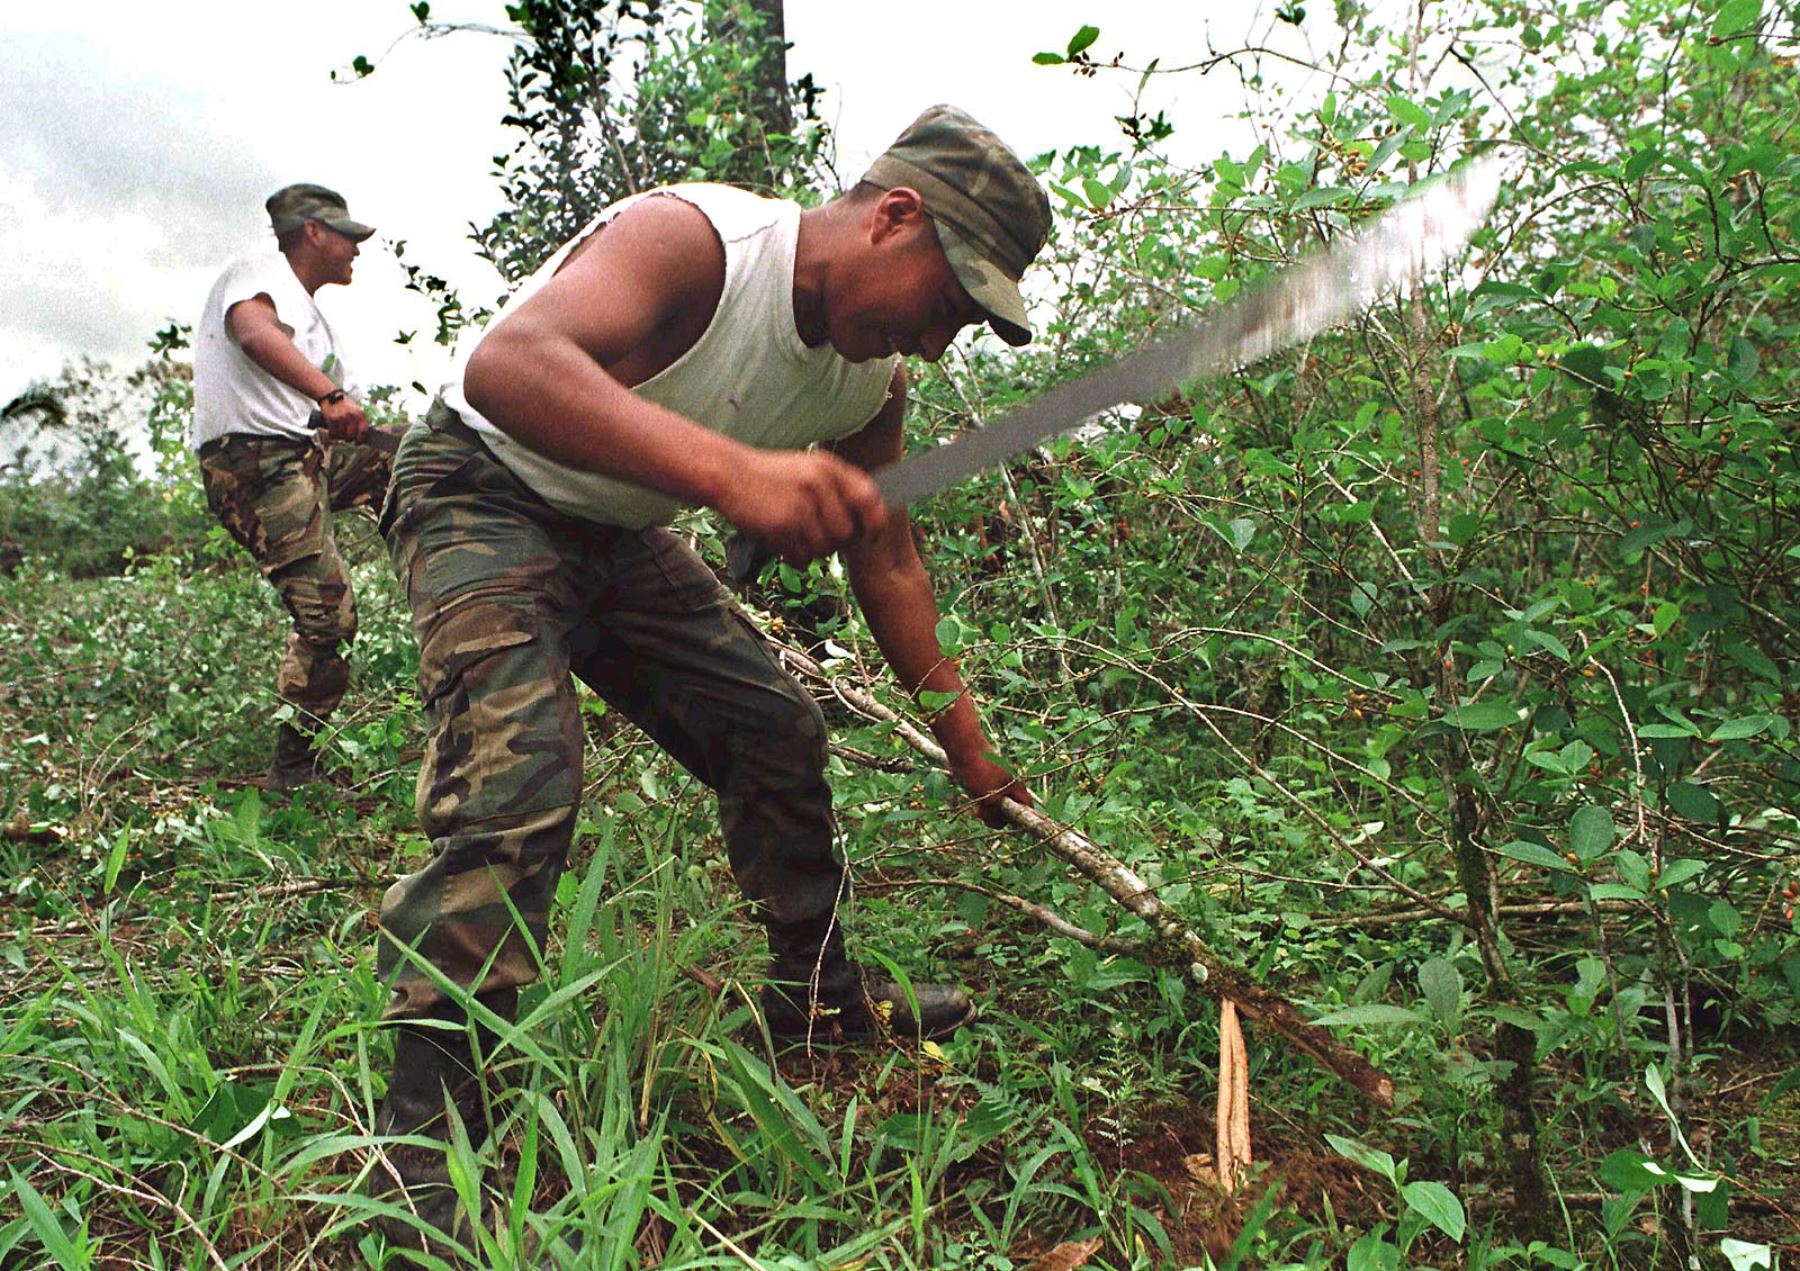 Erradicación de cultivos de hoja de coca